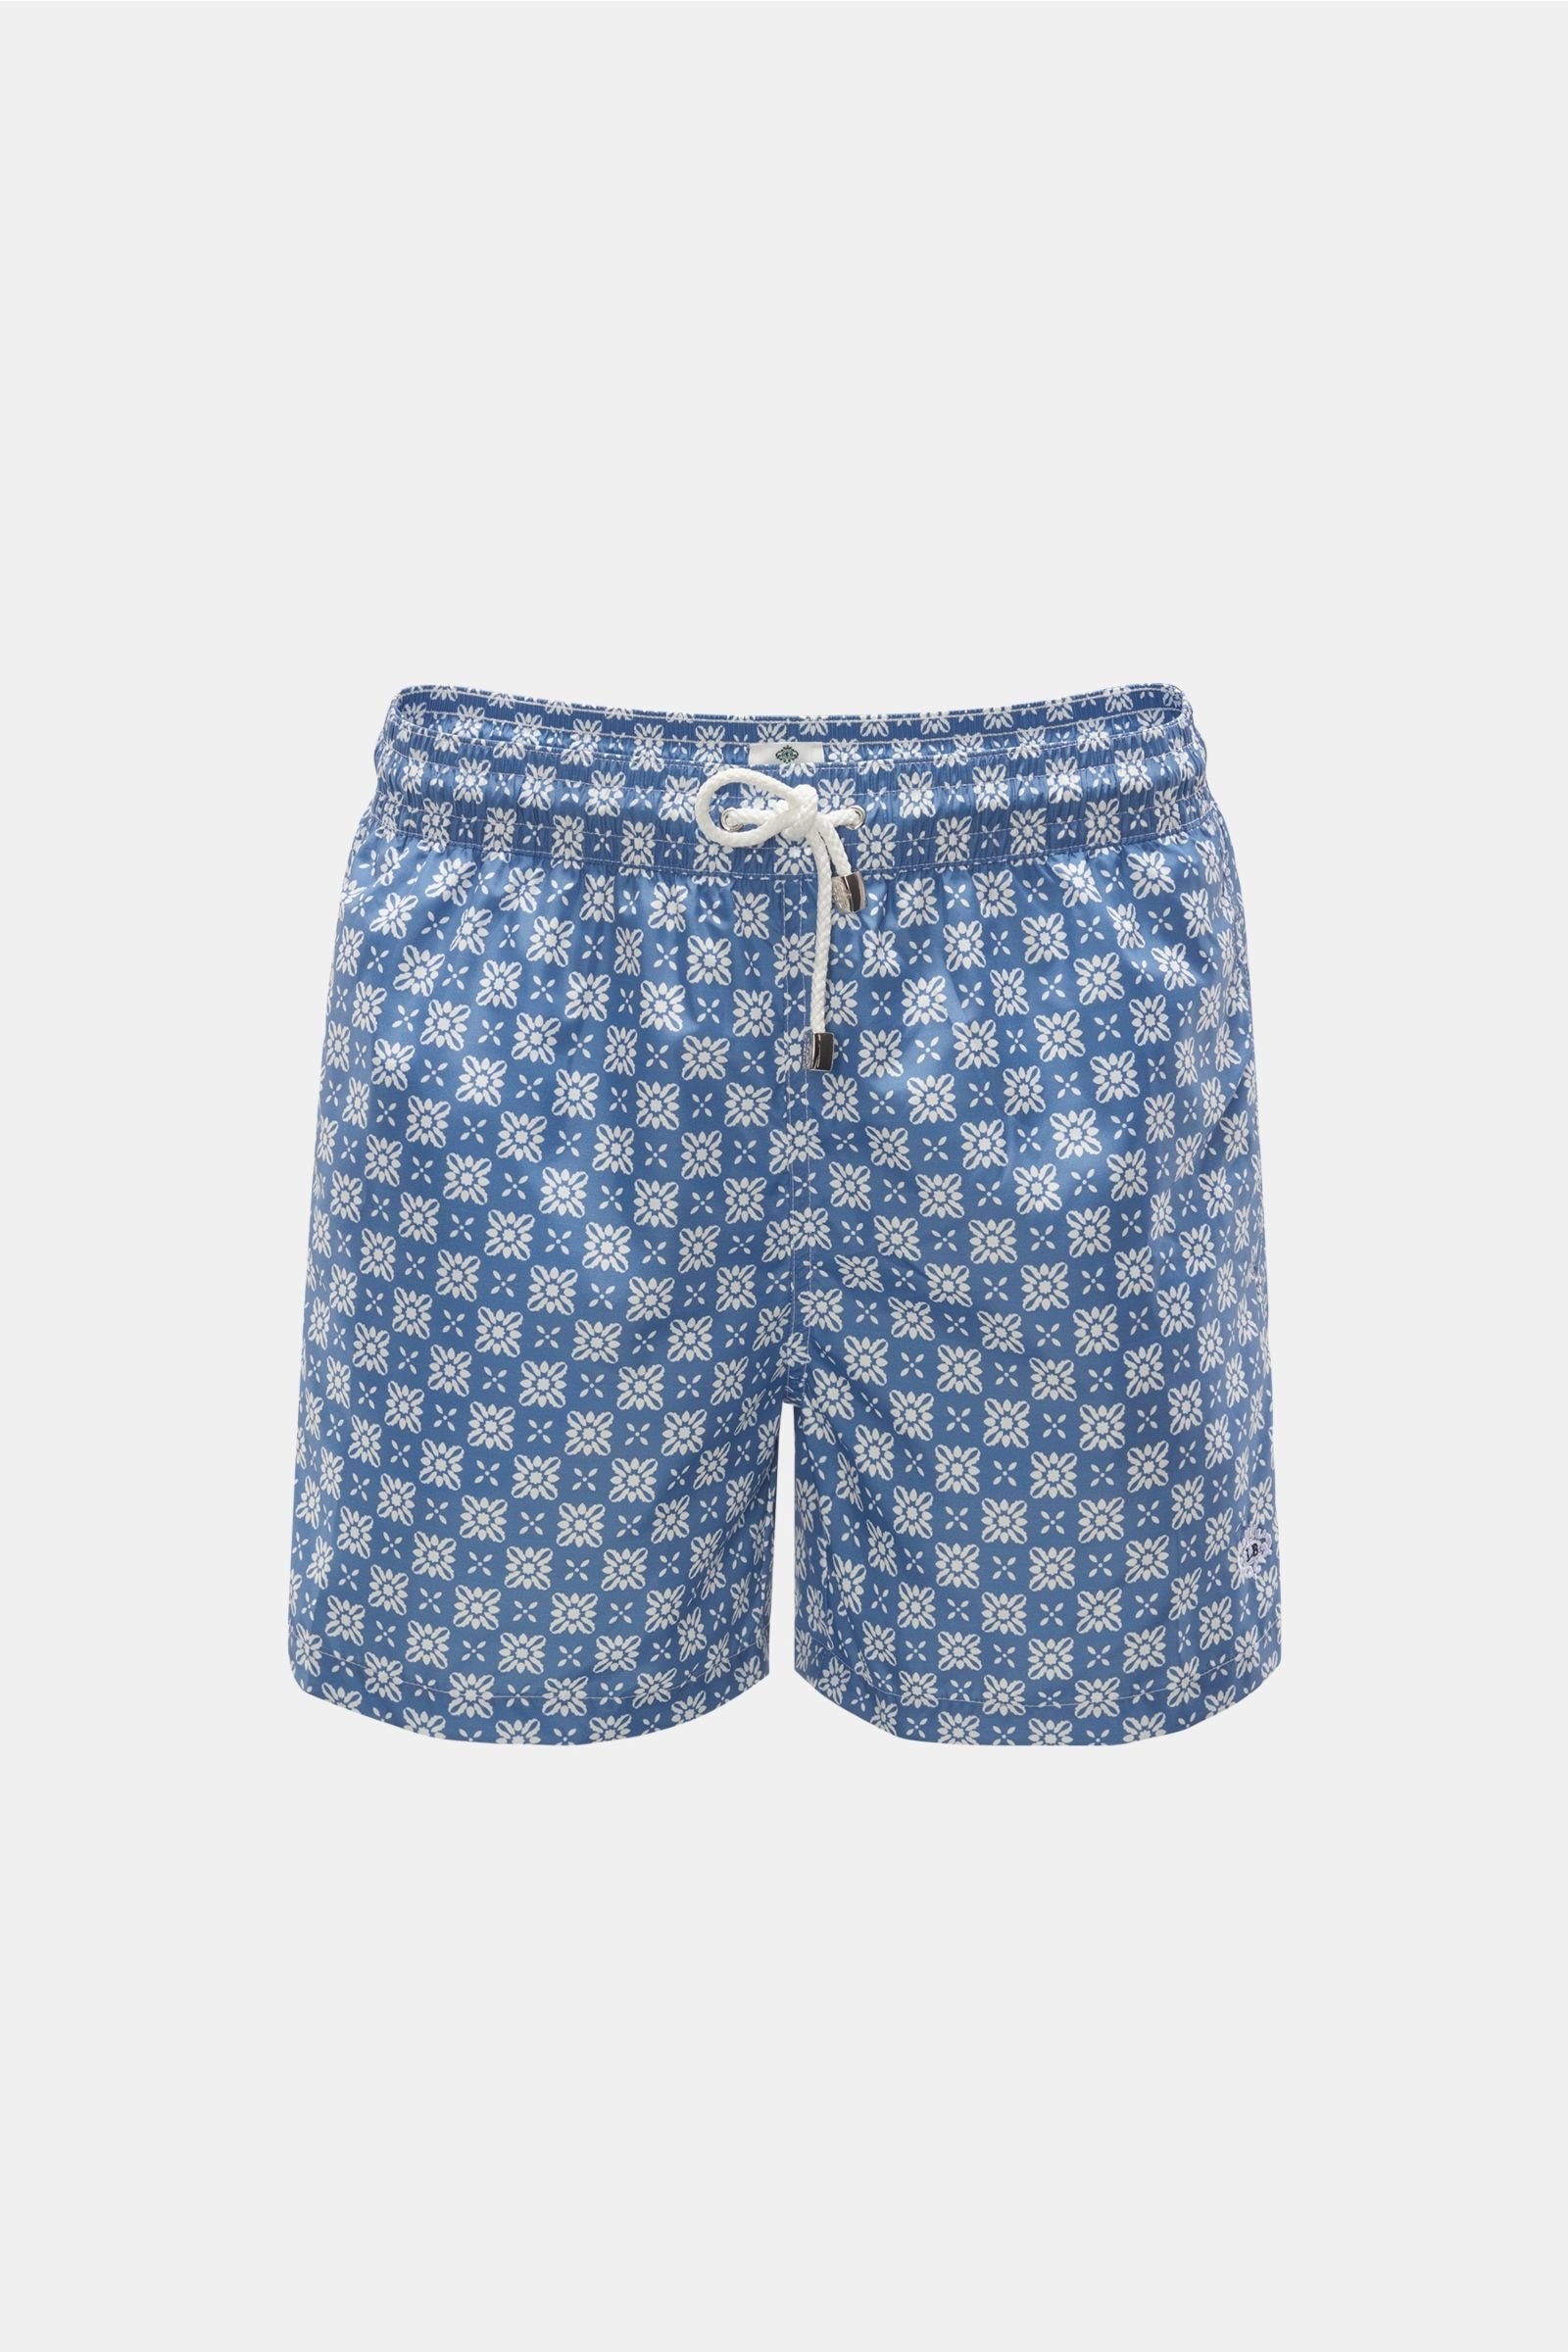 Swim shorts smoky blue patterned